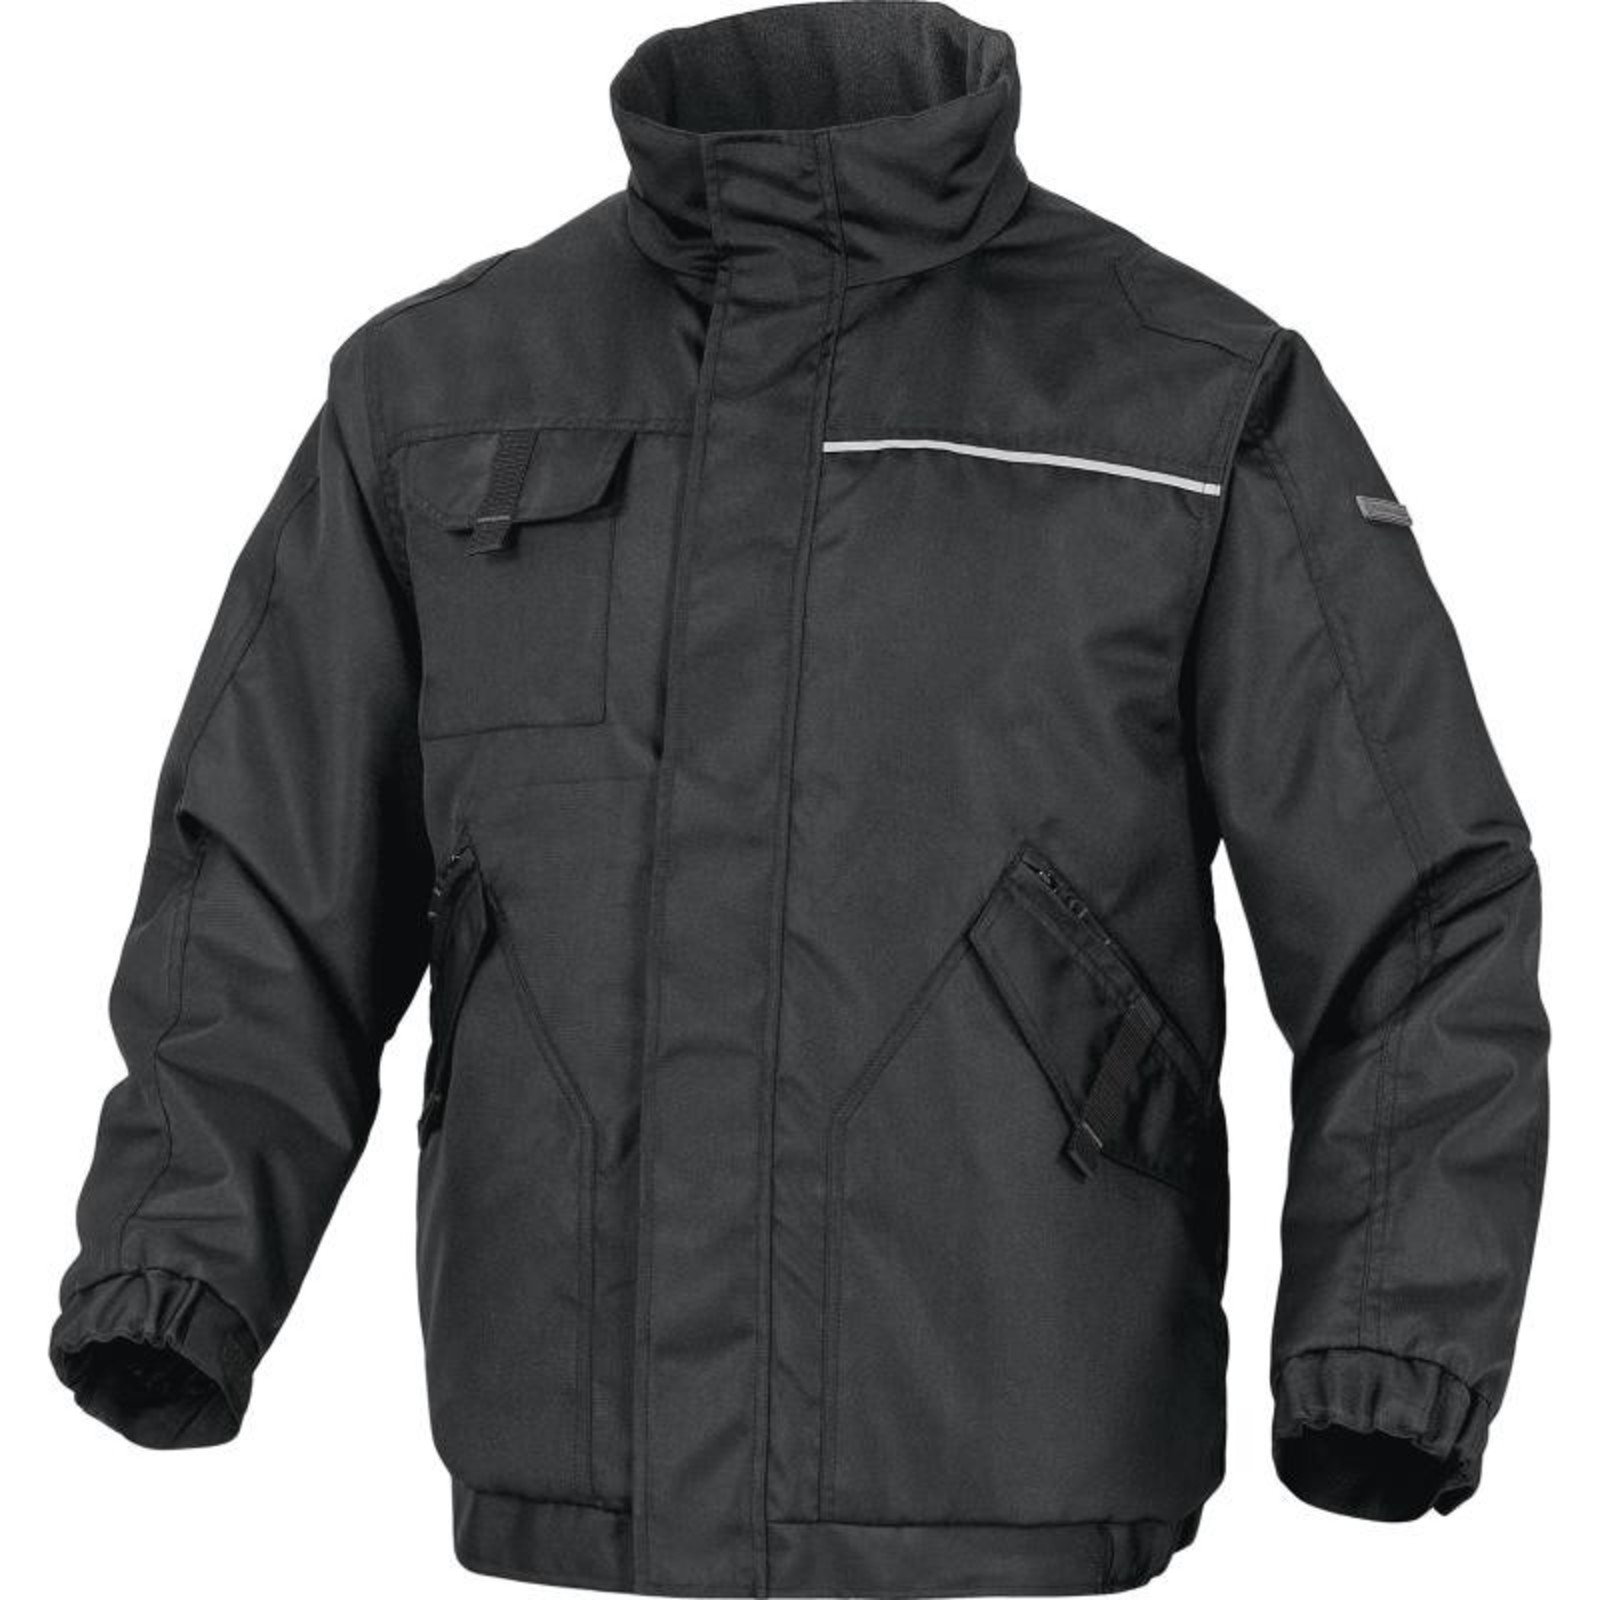 Zimná pracovná bunda Delta Plus Northwood2 - veľkosť: M, farba: sivá/čierna